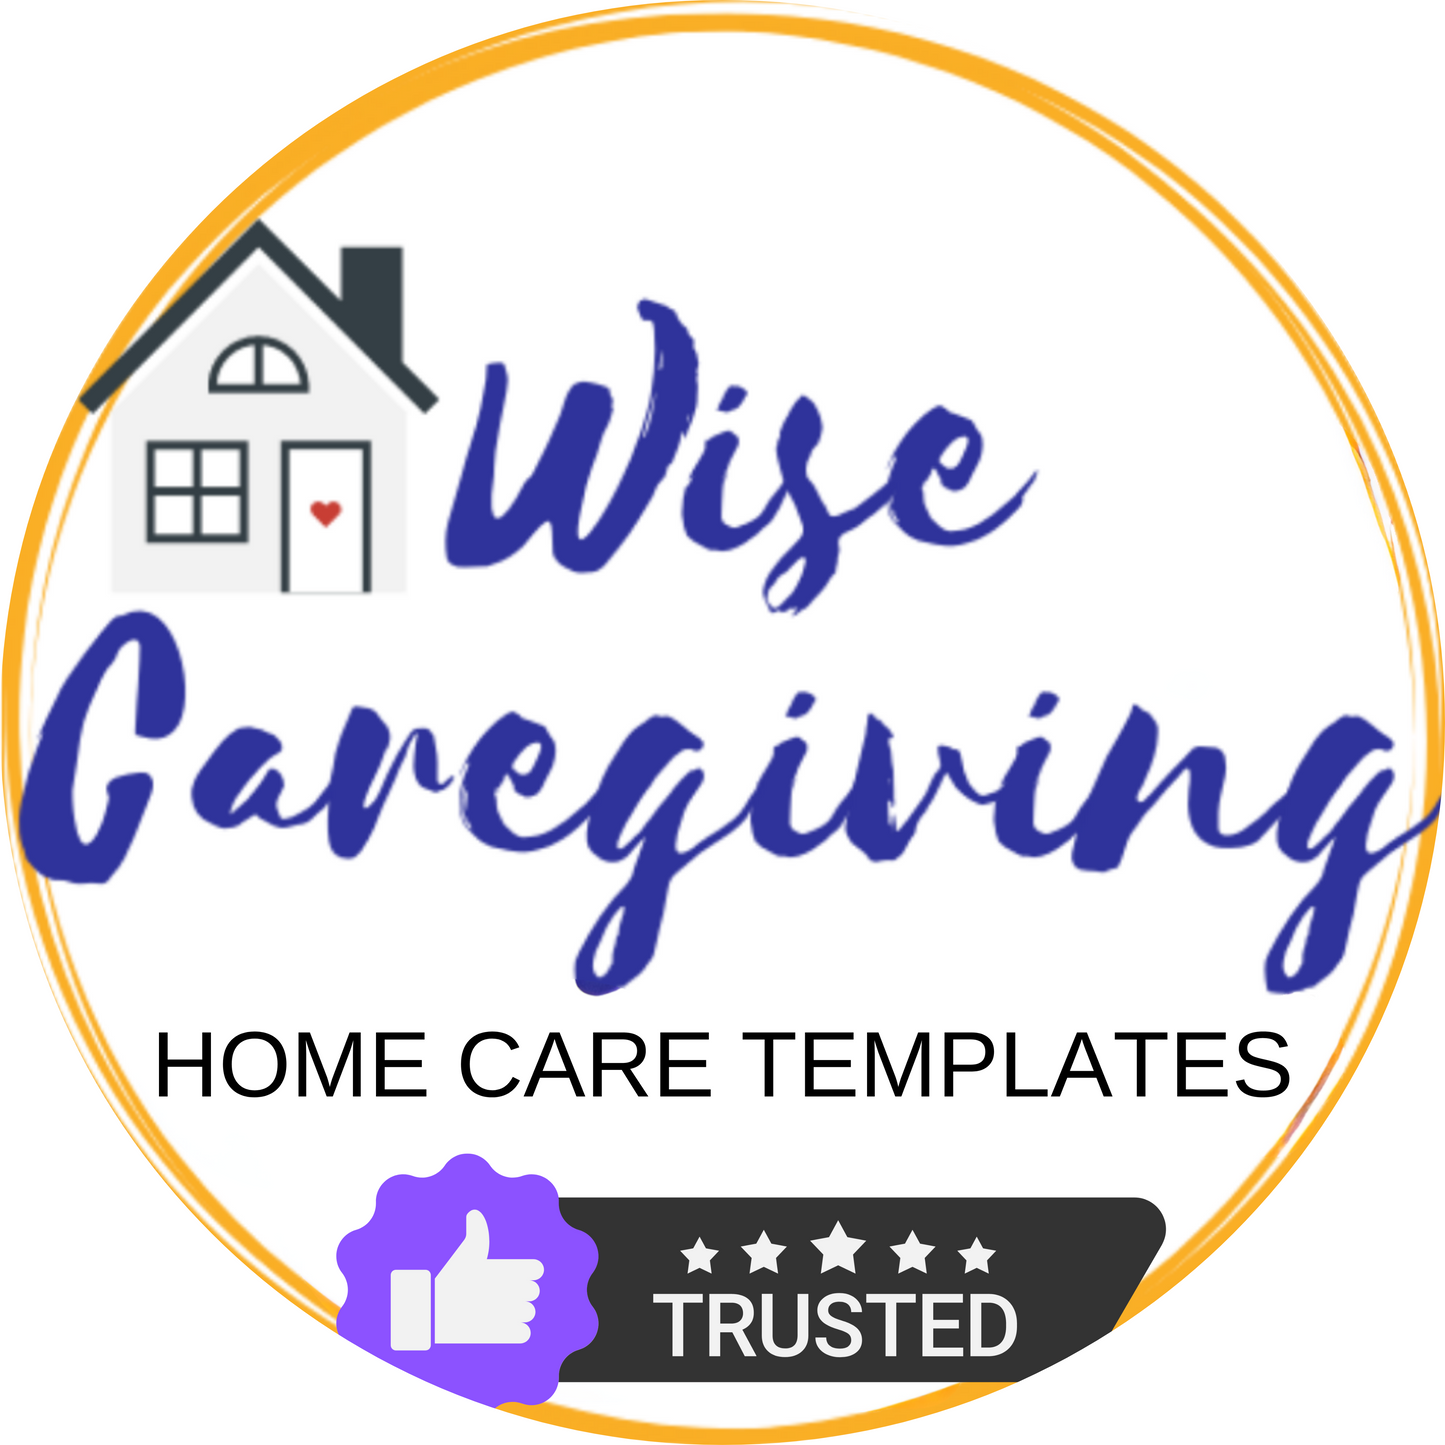 Hire a Caregiver Checklist Template